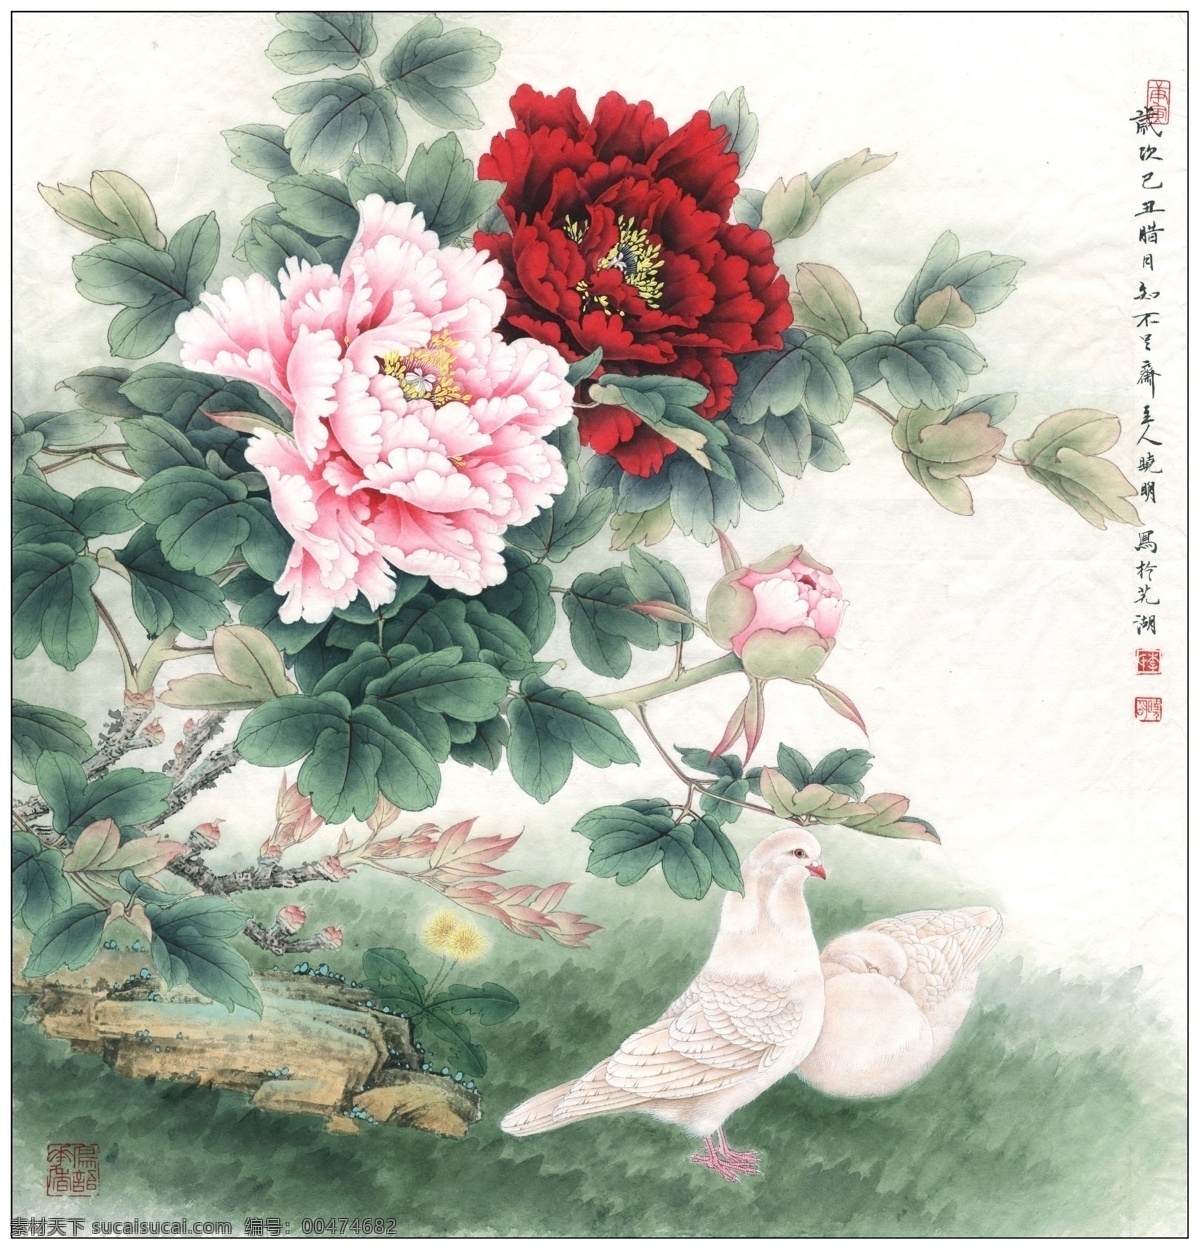 中式 古典 花鸟 工笔画 中国风绘画 精美绘画 植物花鸟 装饰画 古典画 牡丹花朵 文化艺术 绘画书法